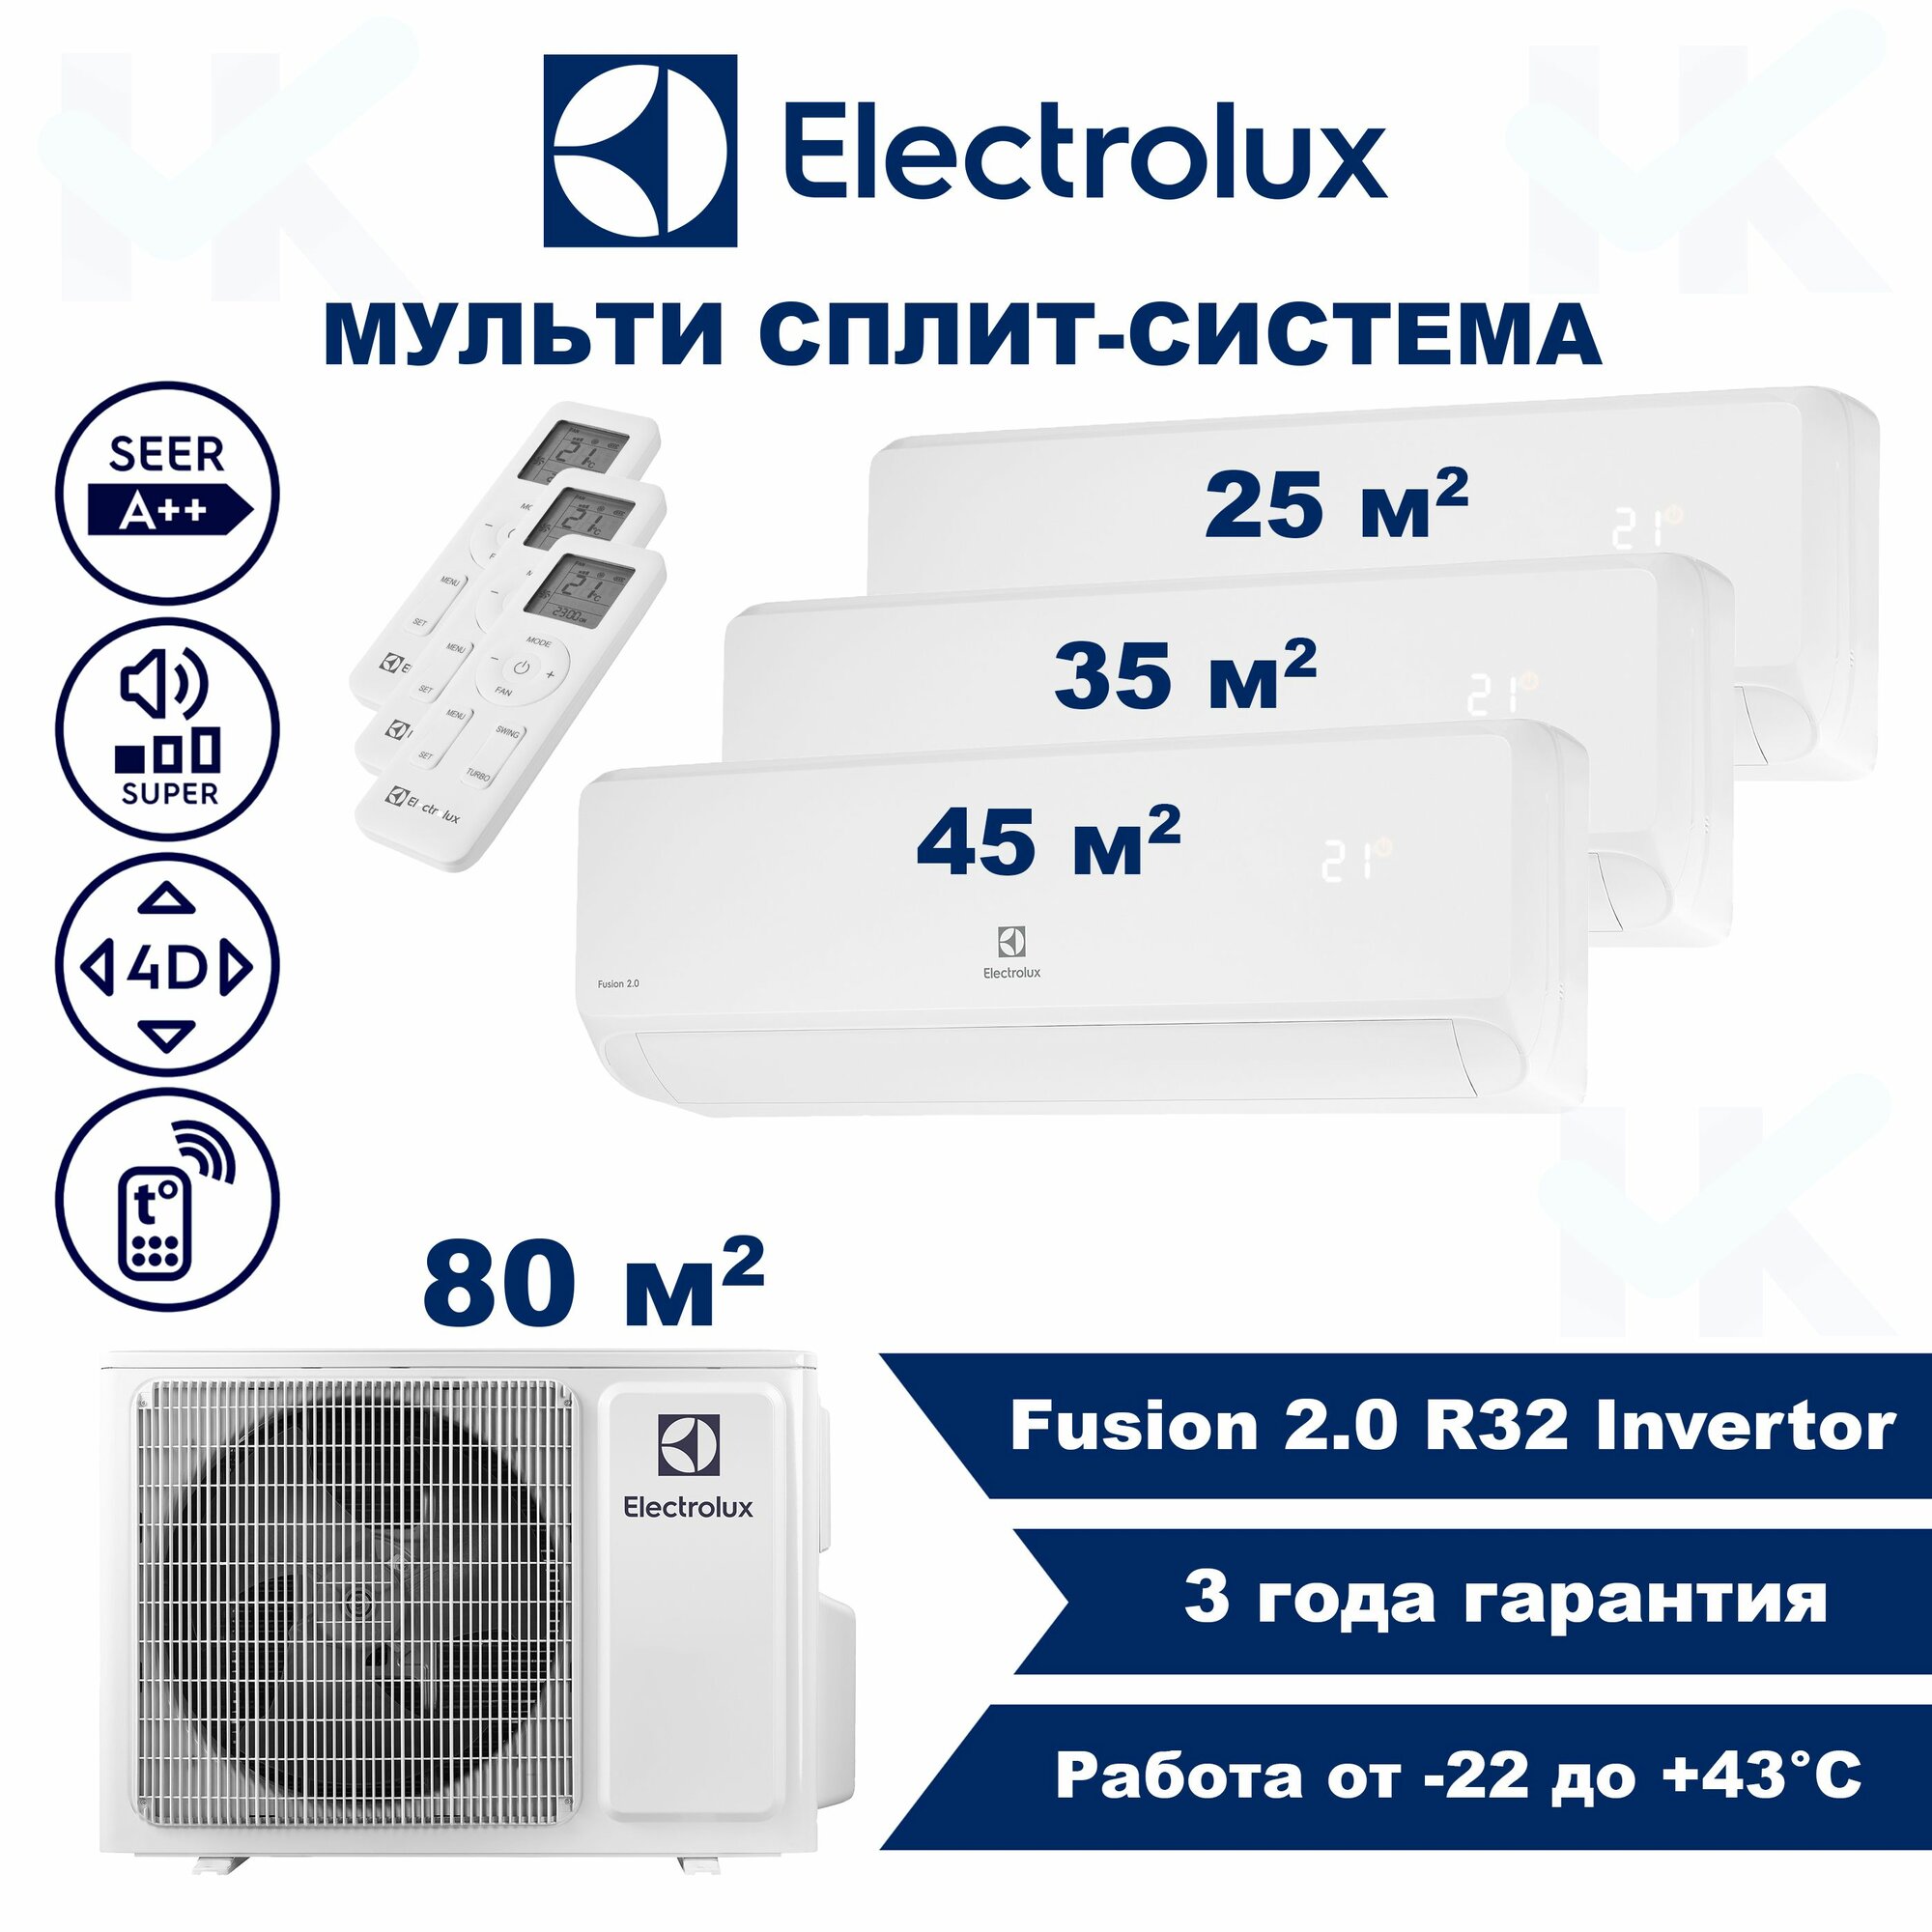 Инверторная мульти сплит-система ELECTROLUX серии Fusion 2.0 на 3 комнаты (25 м2 + 35 м2 + 45 м2) с наружным блоком 80 м2, Попеременная работа